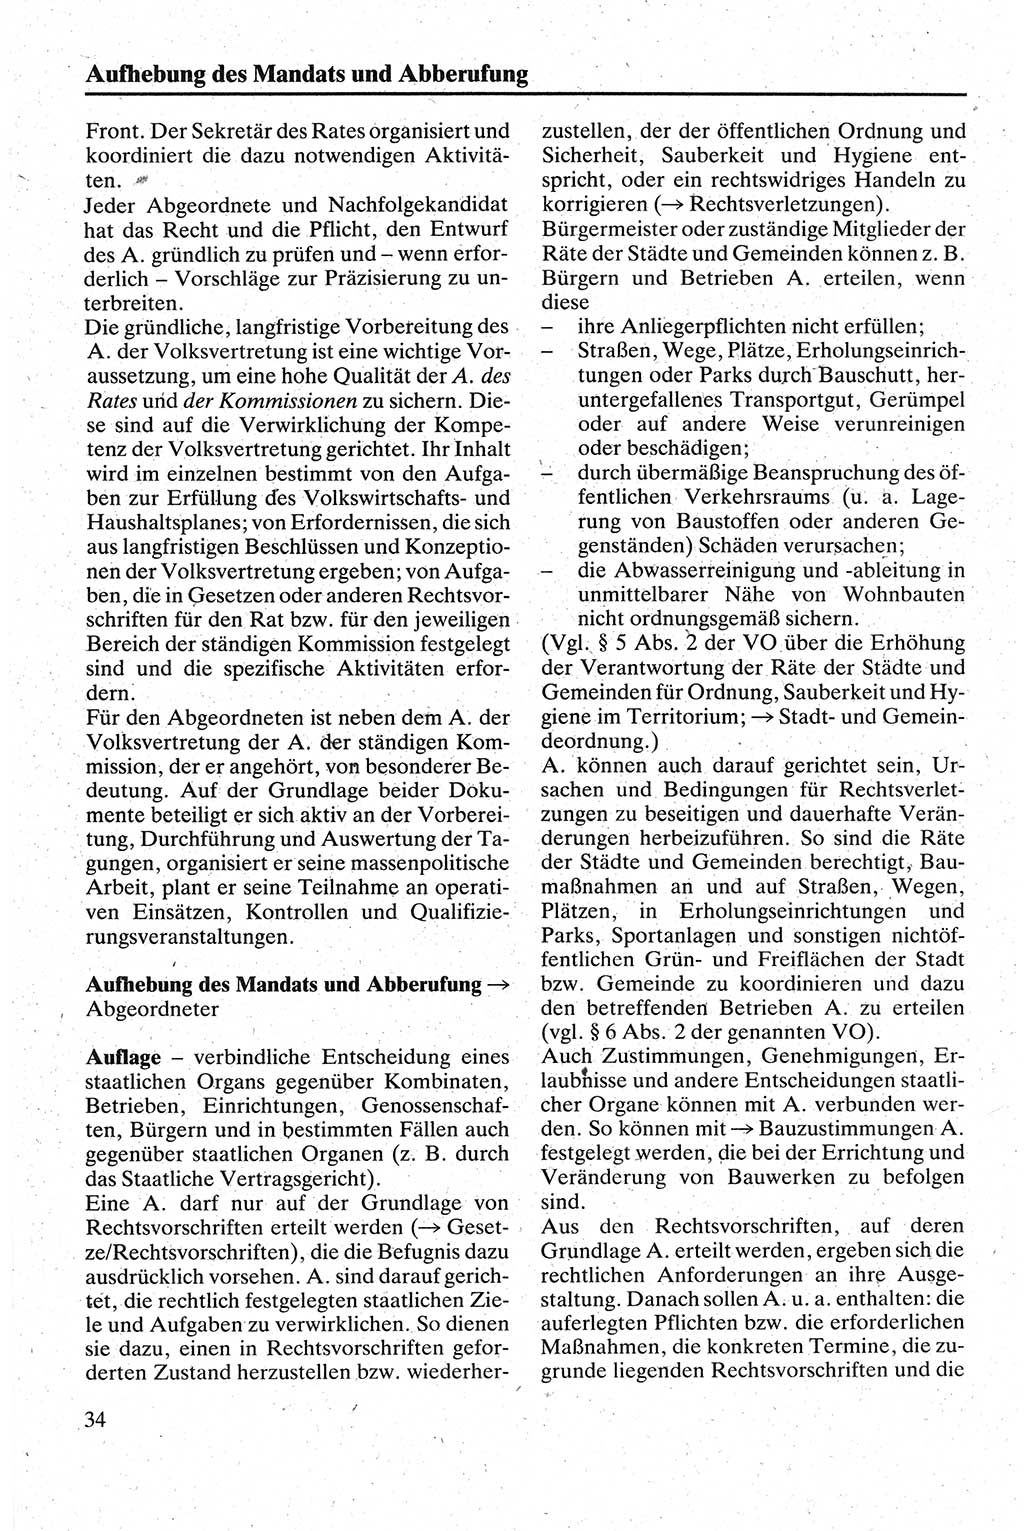 Handbuch für den Abgeordneten [Deutsche Demokratische Republik (DDR)] 1984, Seite 34 (Hb. Abg. DDR 1984, S. 34)